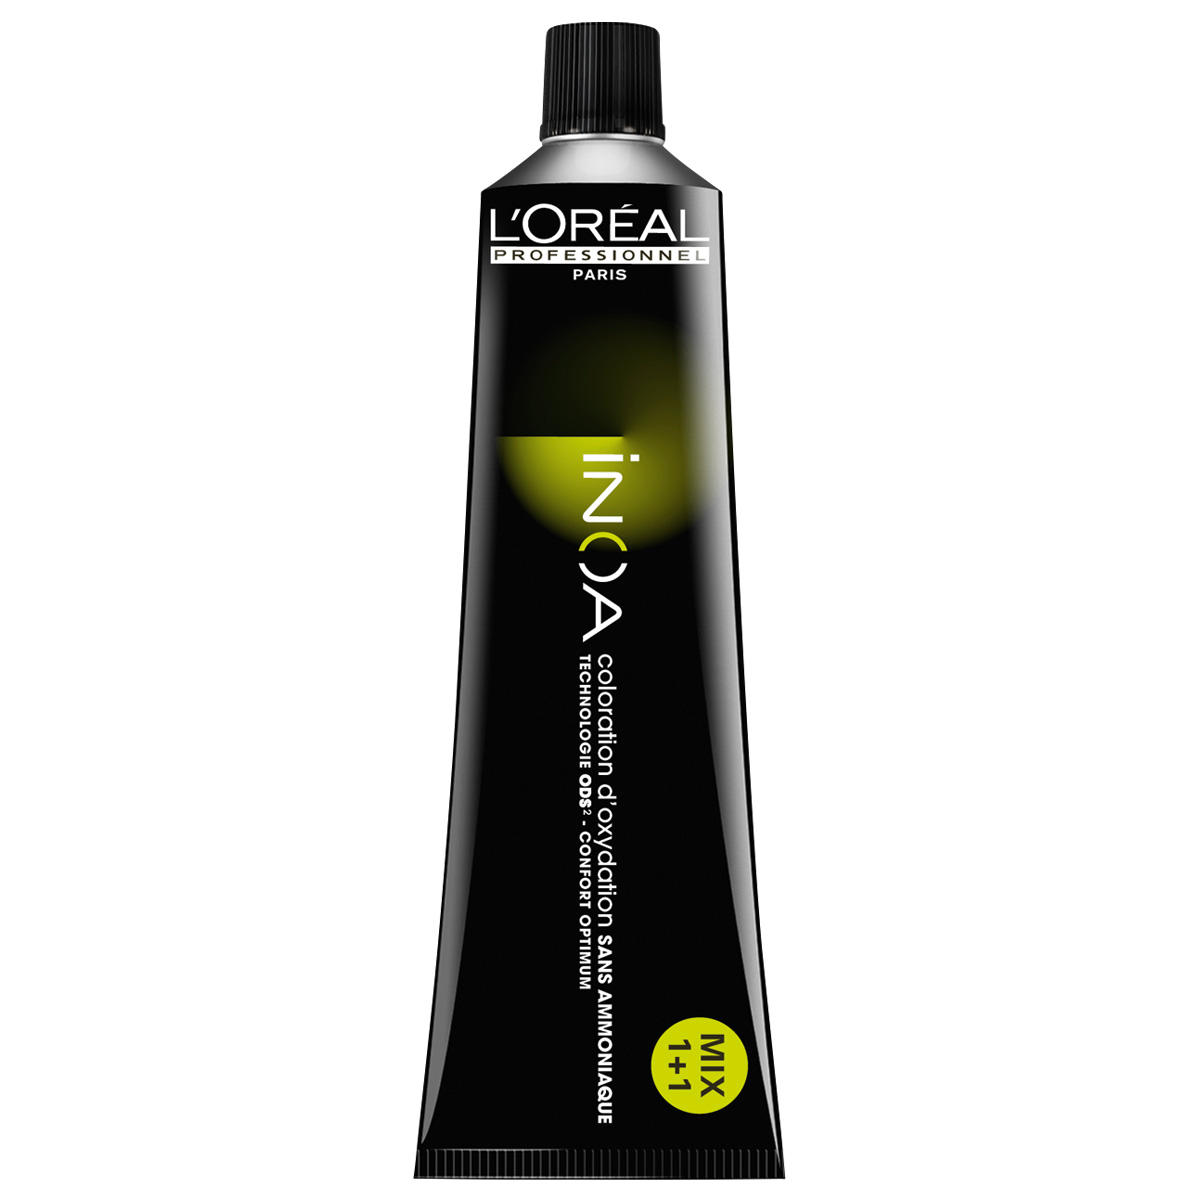 L'Oréal Professionnel Paris Coloration 4.0 Medium Brown Intensive, Tube 60 ml - 1